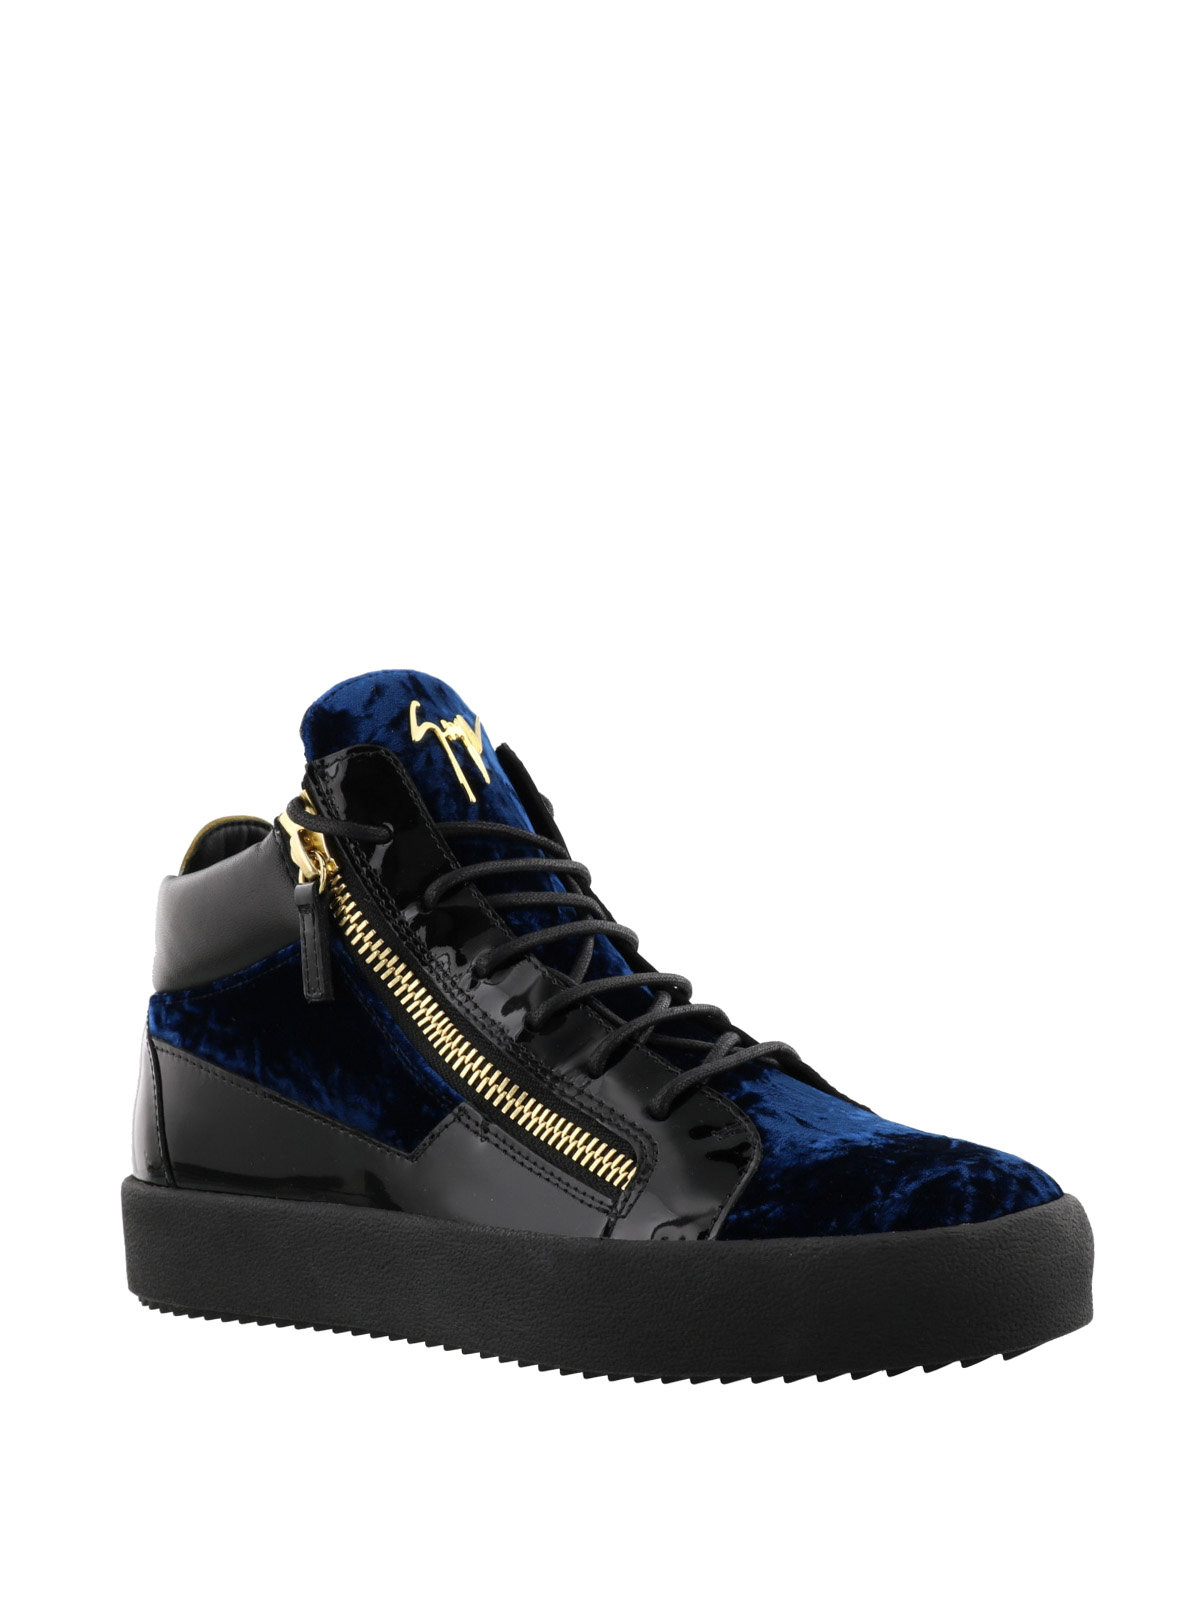 Vend om Mange Stol Trainers Giuseppe Zanotti - Kriss blue velvet sneakers - RW70010020